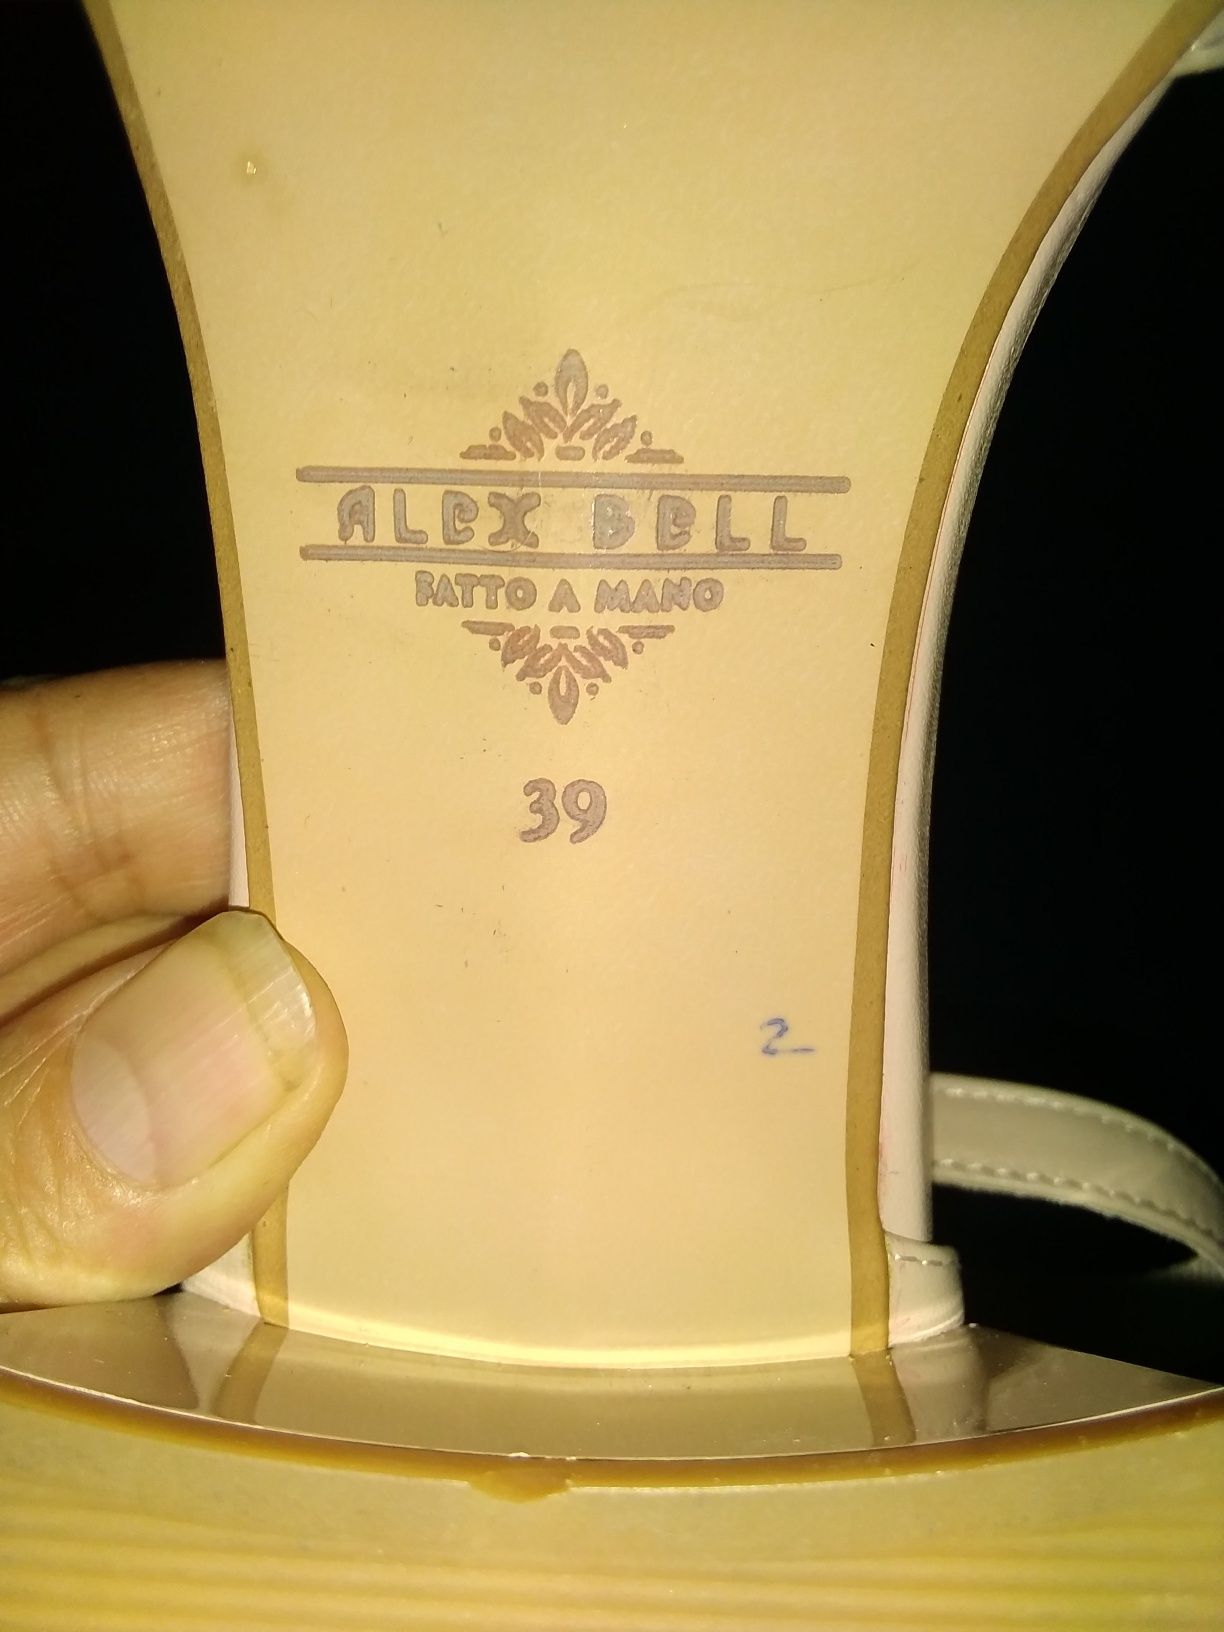 Босоножки Alex Bell 39 размер б/у